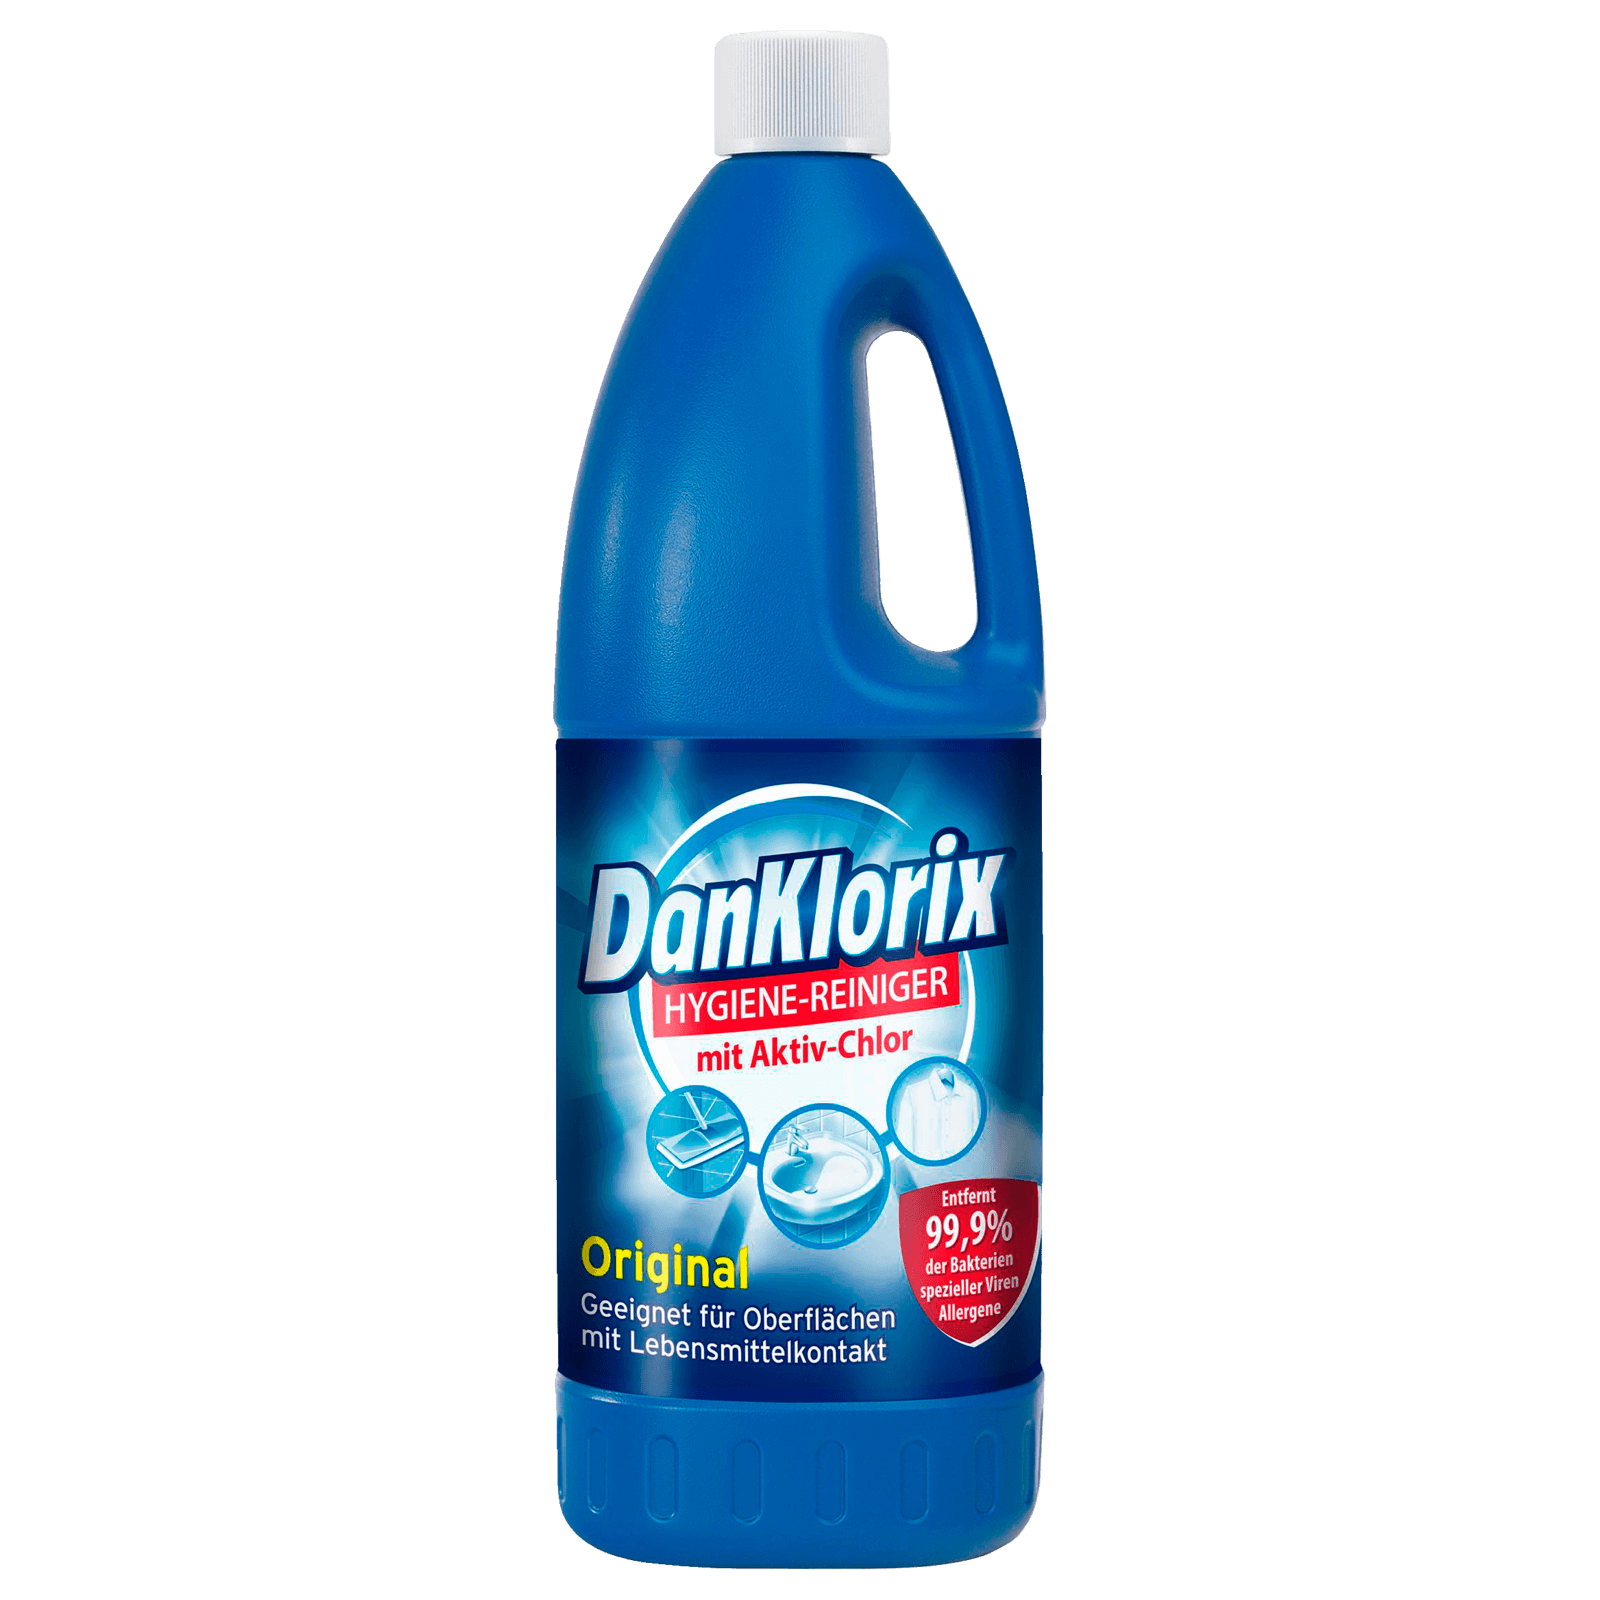 DanKlorix Hygienereiniger mit Chlor 1,5l bei REWE online bestellen!